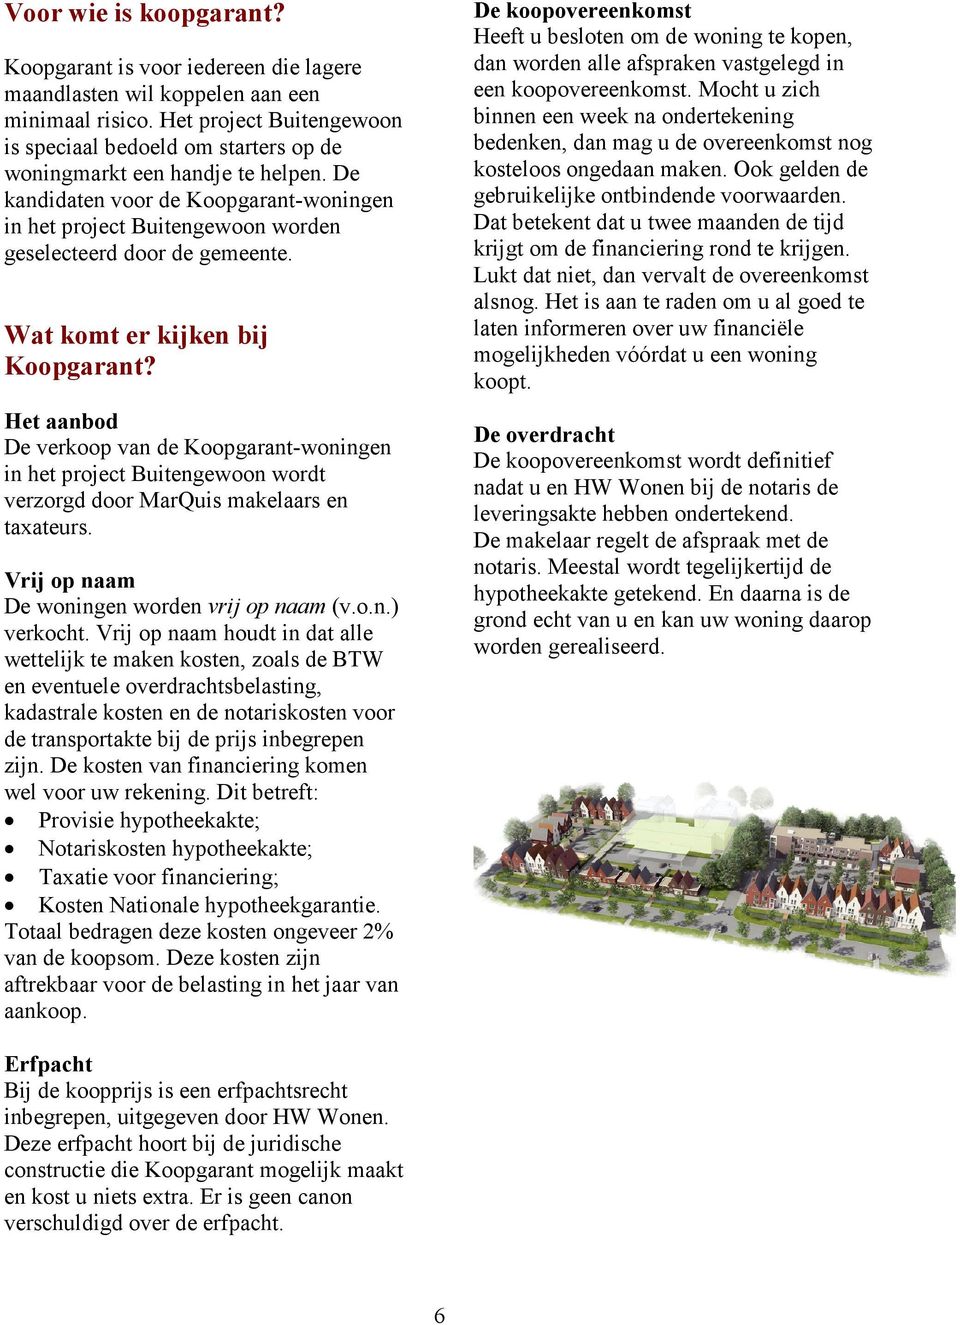 De kandidaten voor de Koopgarant-woningen in het project Buitengewoon worden geselecteerd door de gemeente. Wat komt er kijken bij Koopgarant?